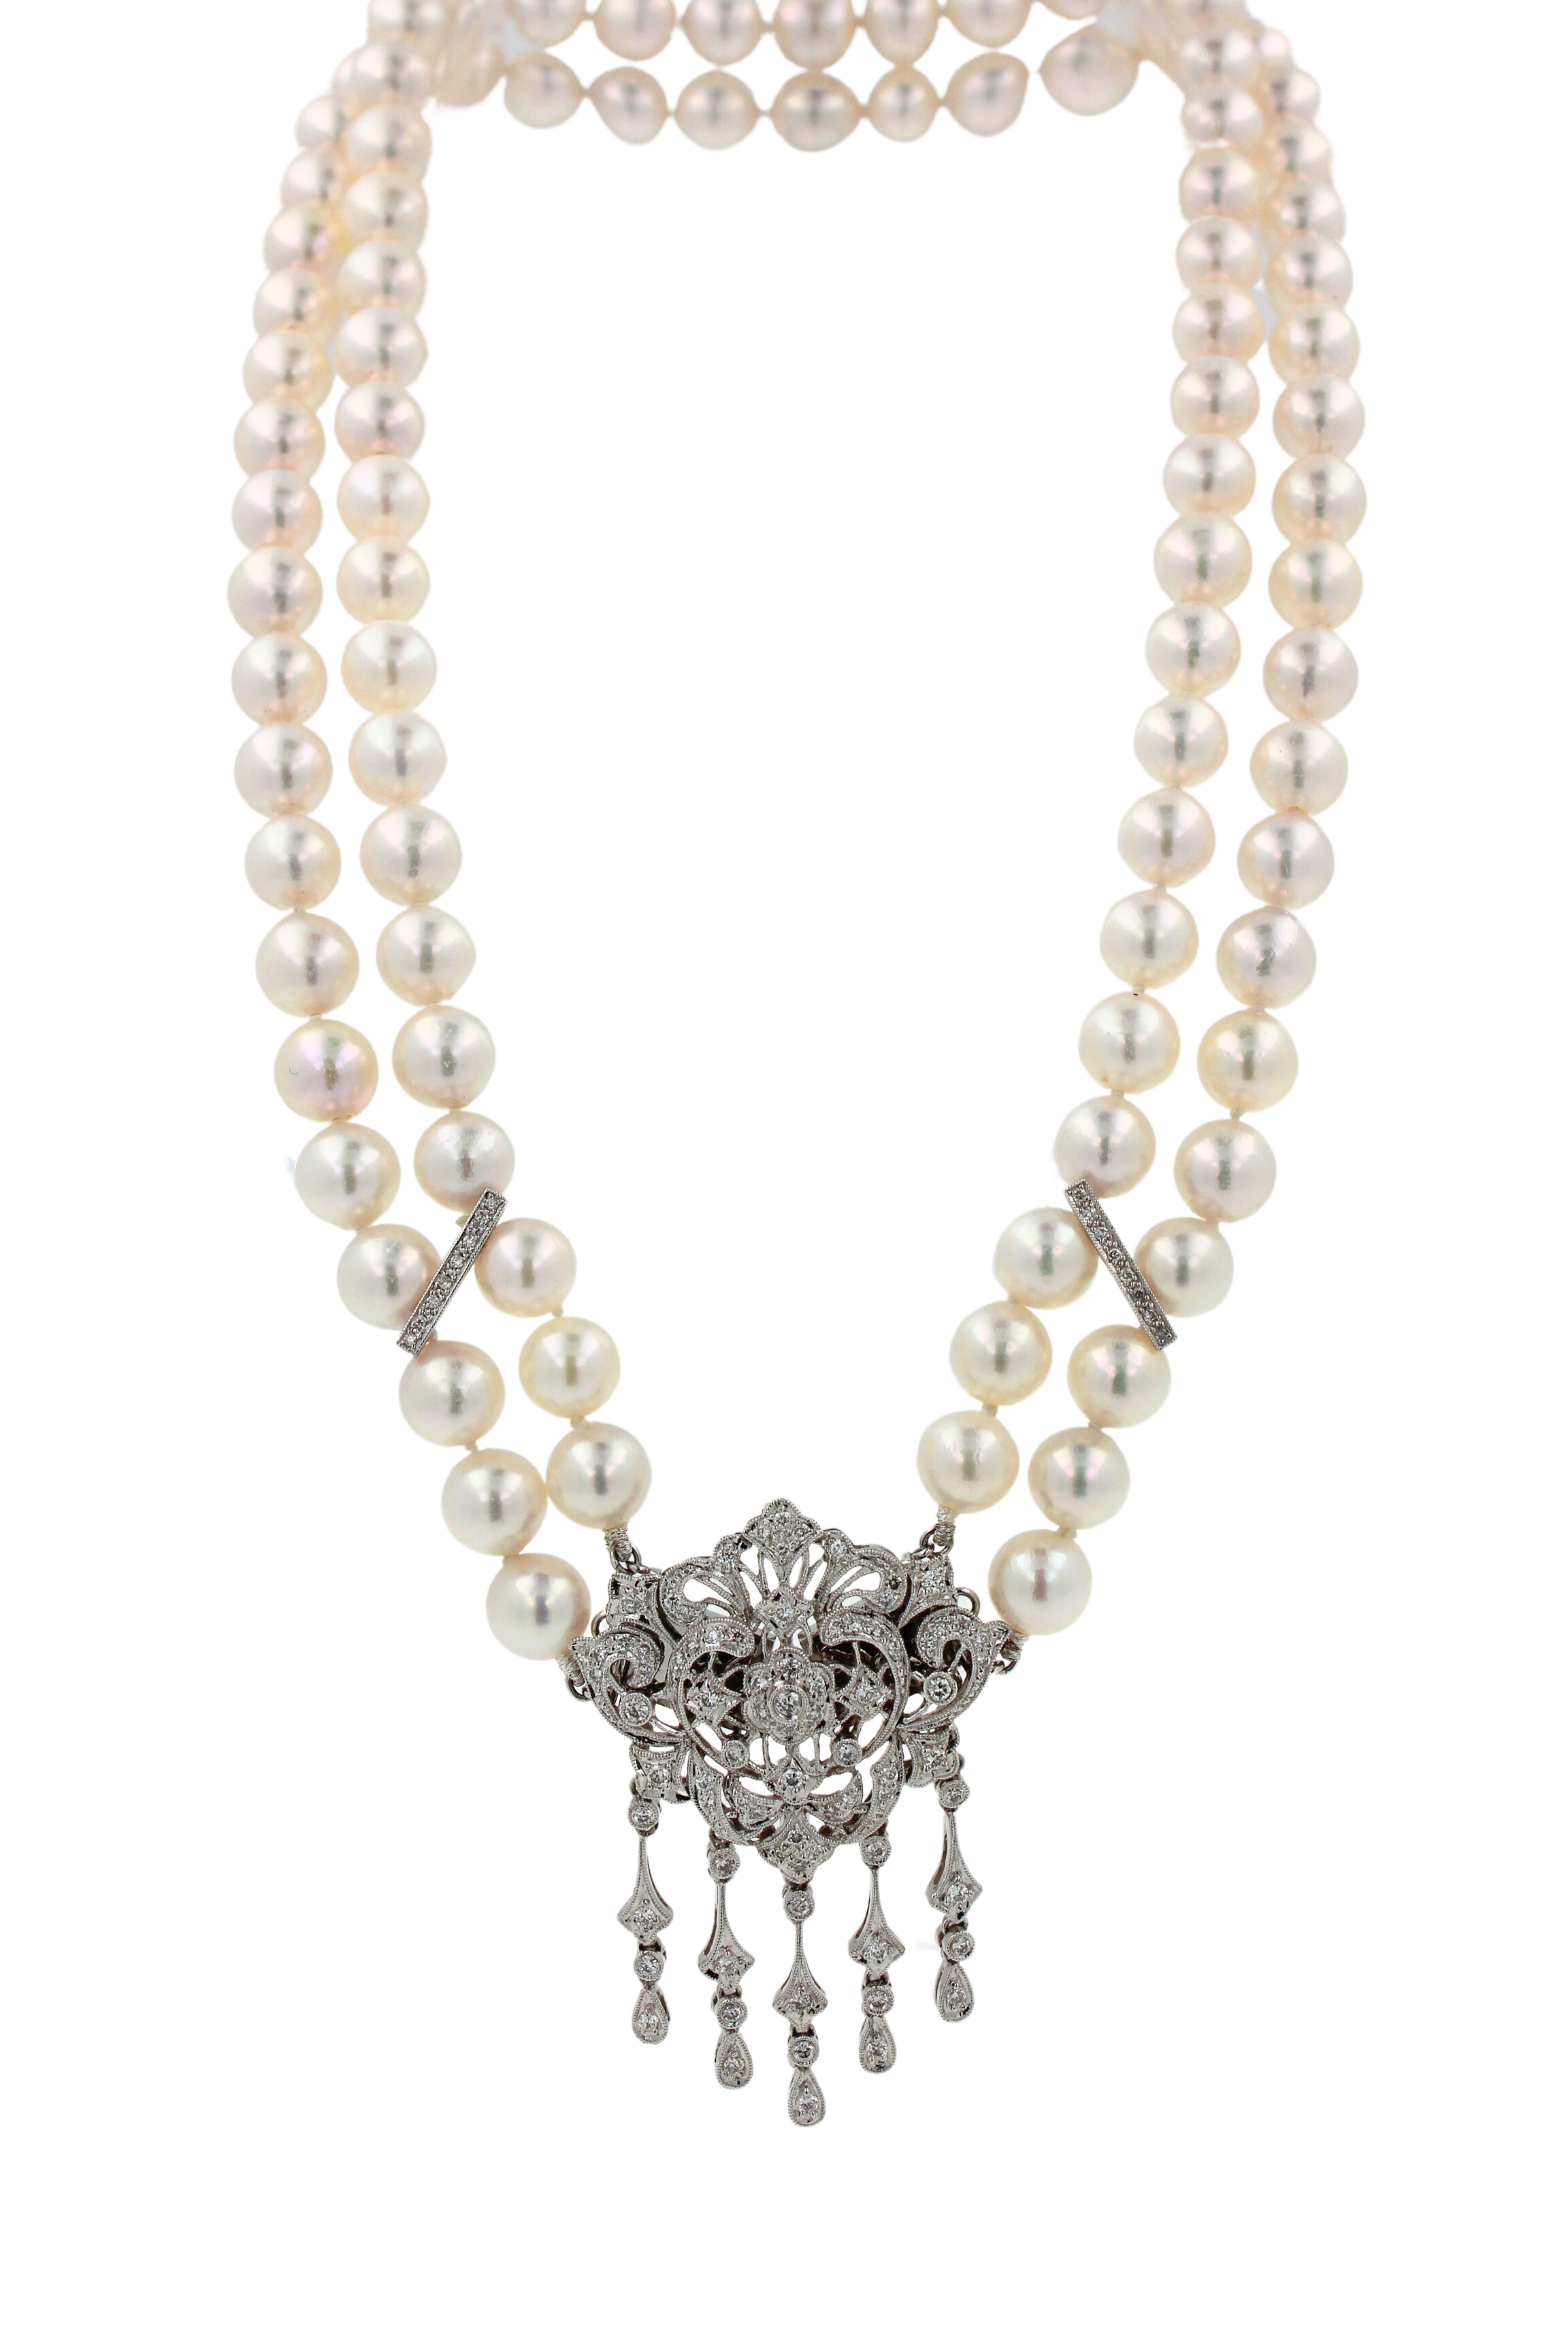 Halskette/Brosche/Anstecknadel, weiße japanische Akoya-Perle Diamant 18 Karat Weißgold